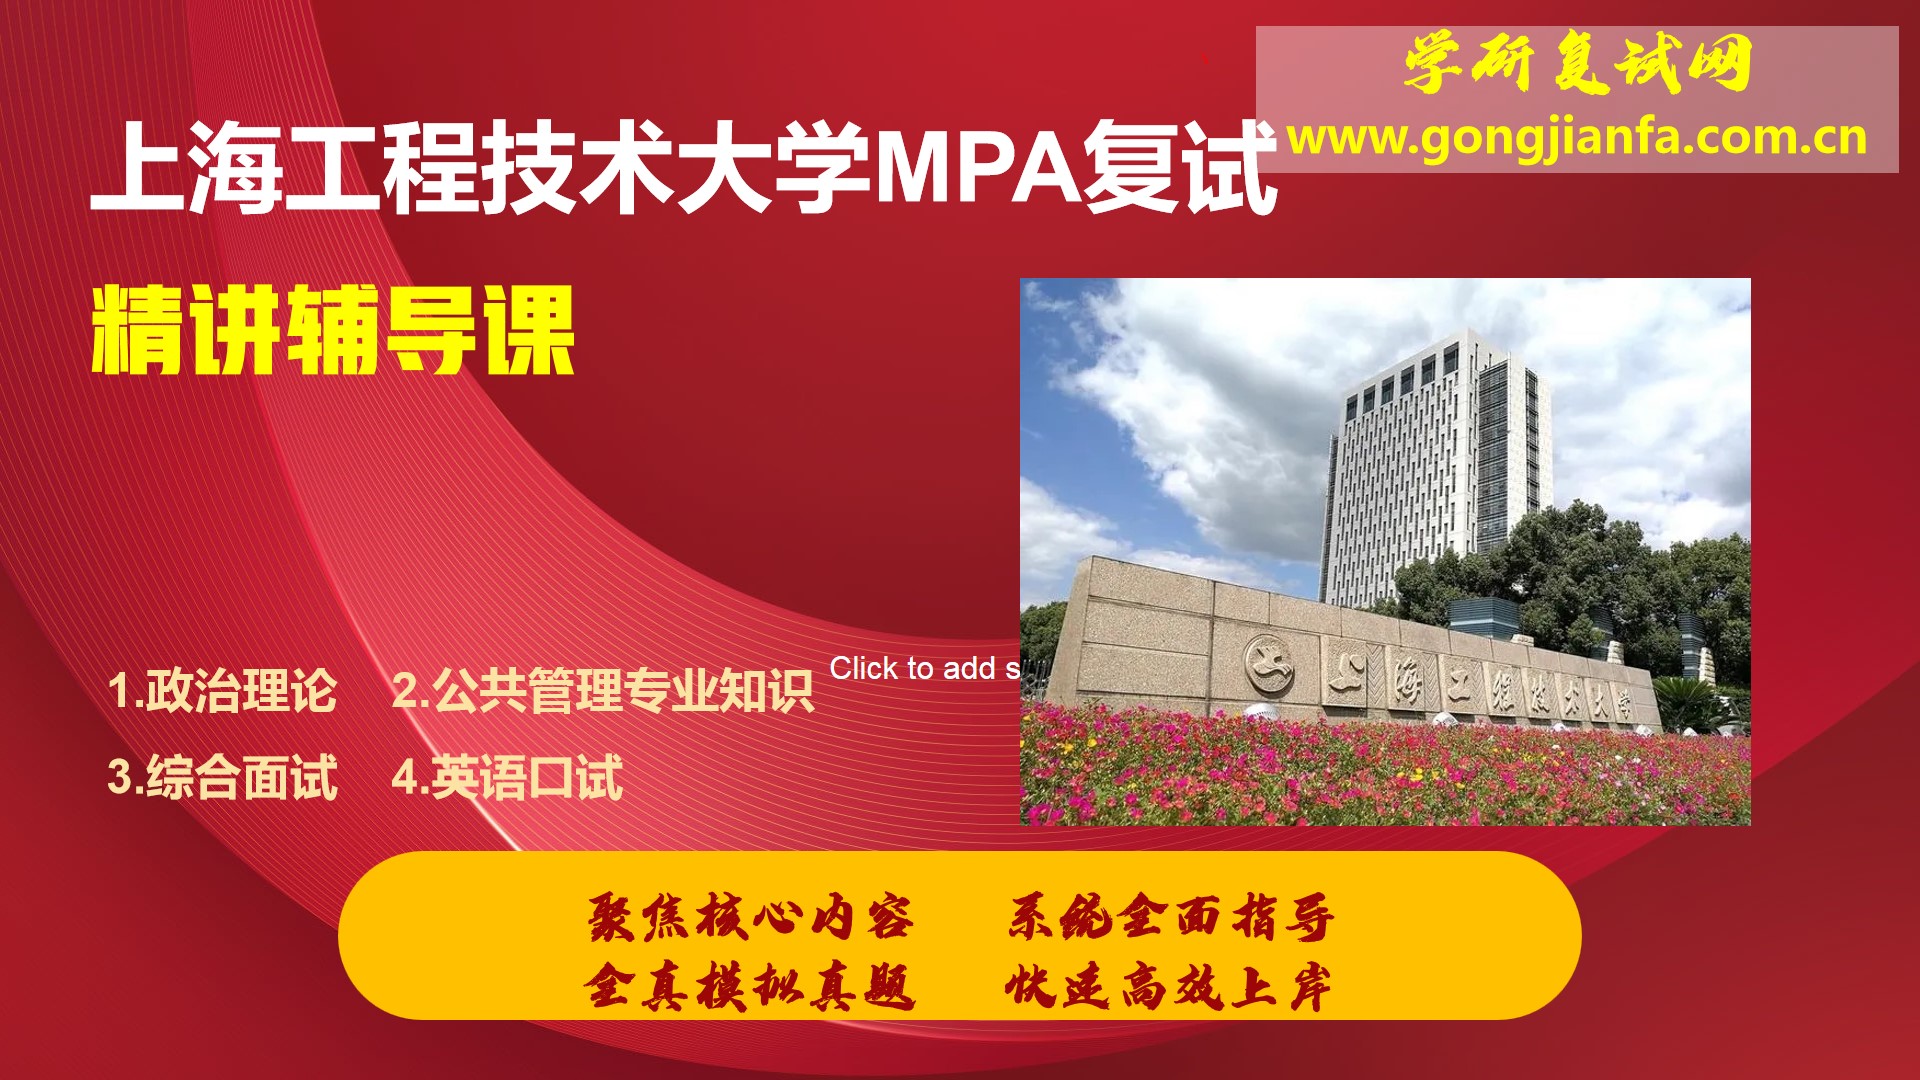 上海工程技术大学MPA复试突击上岸课程